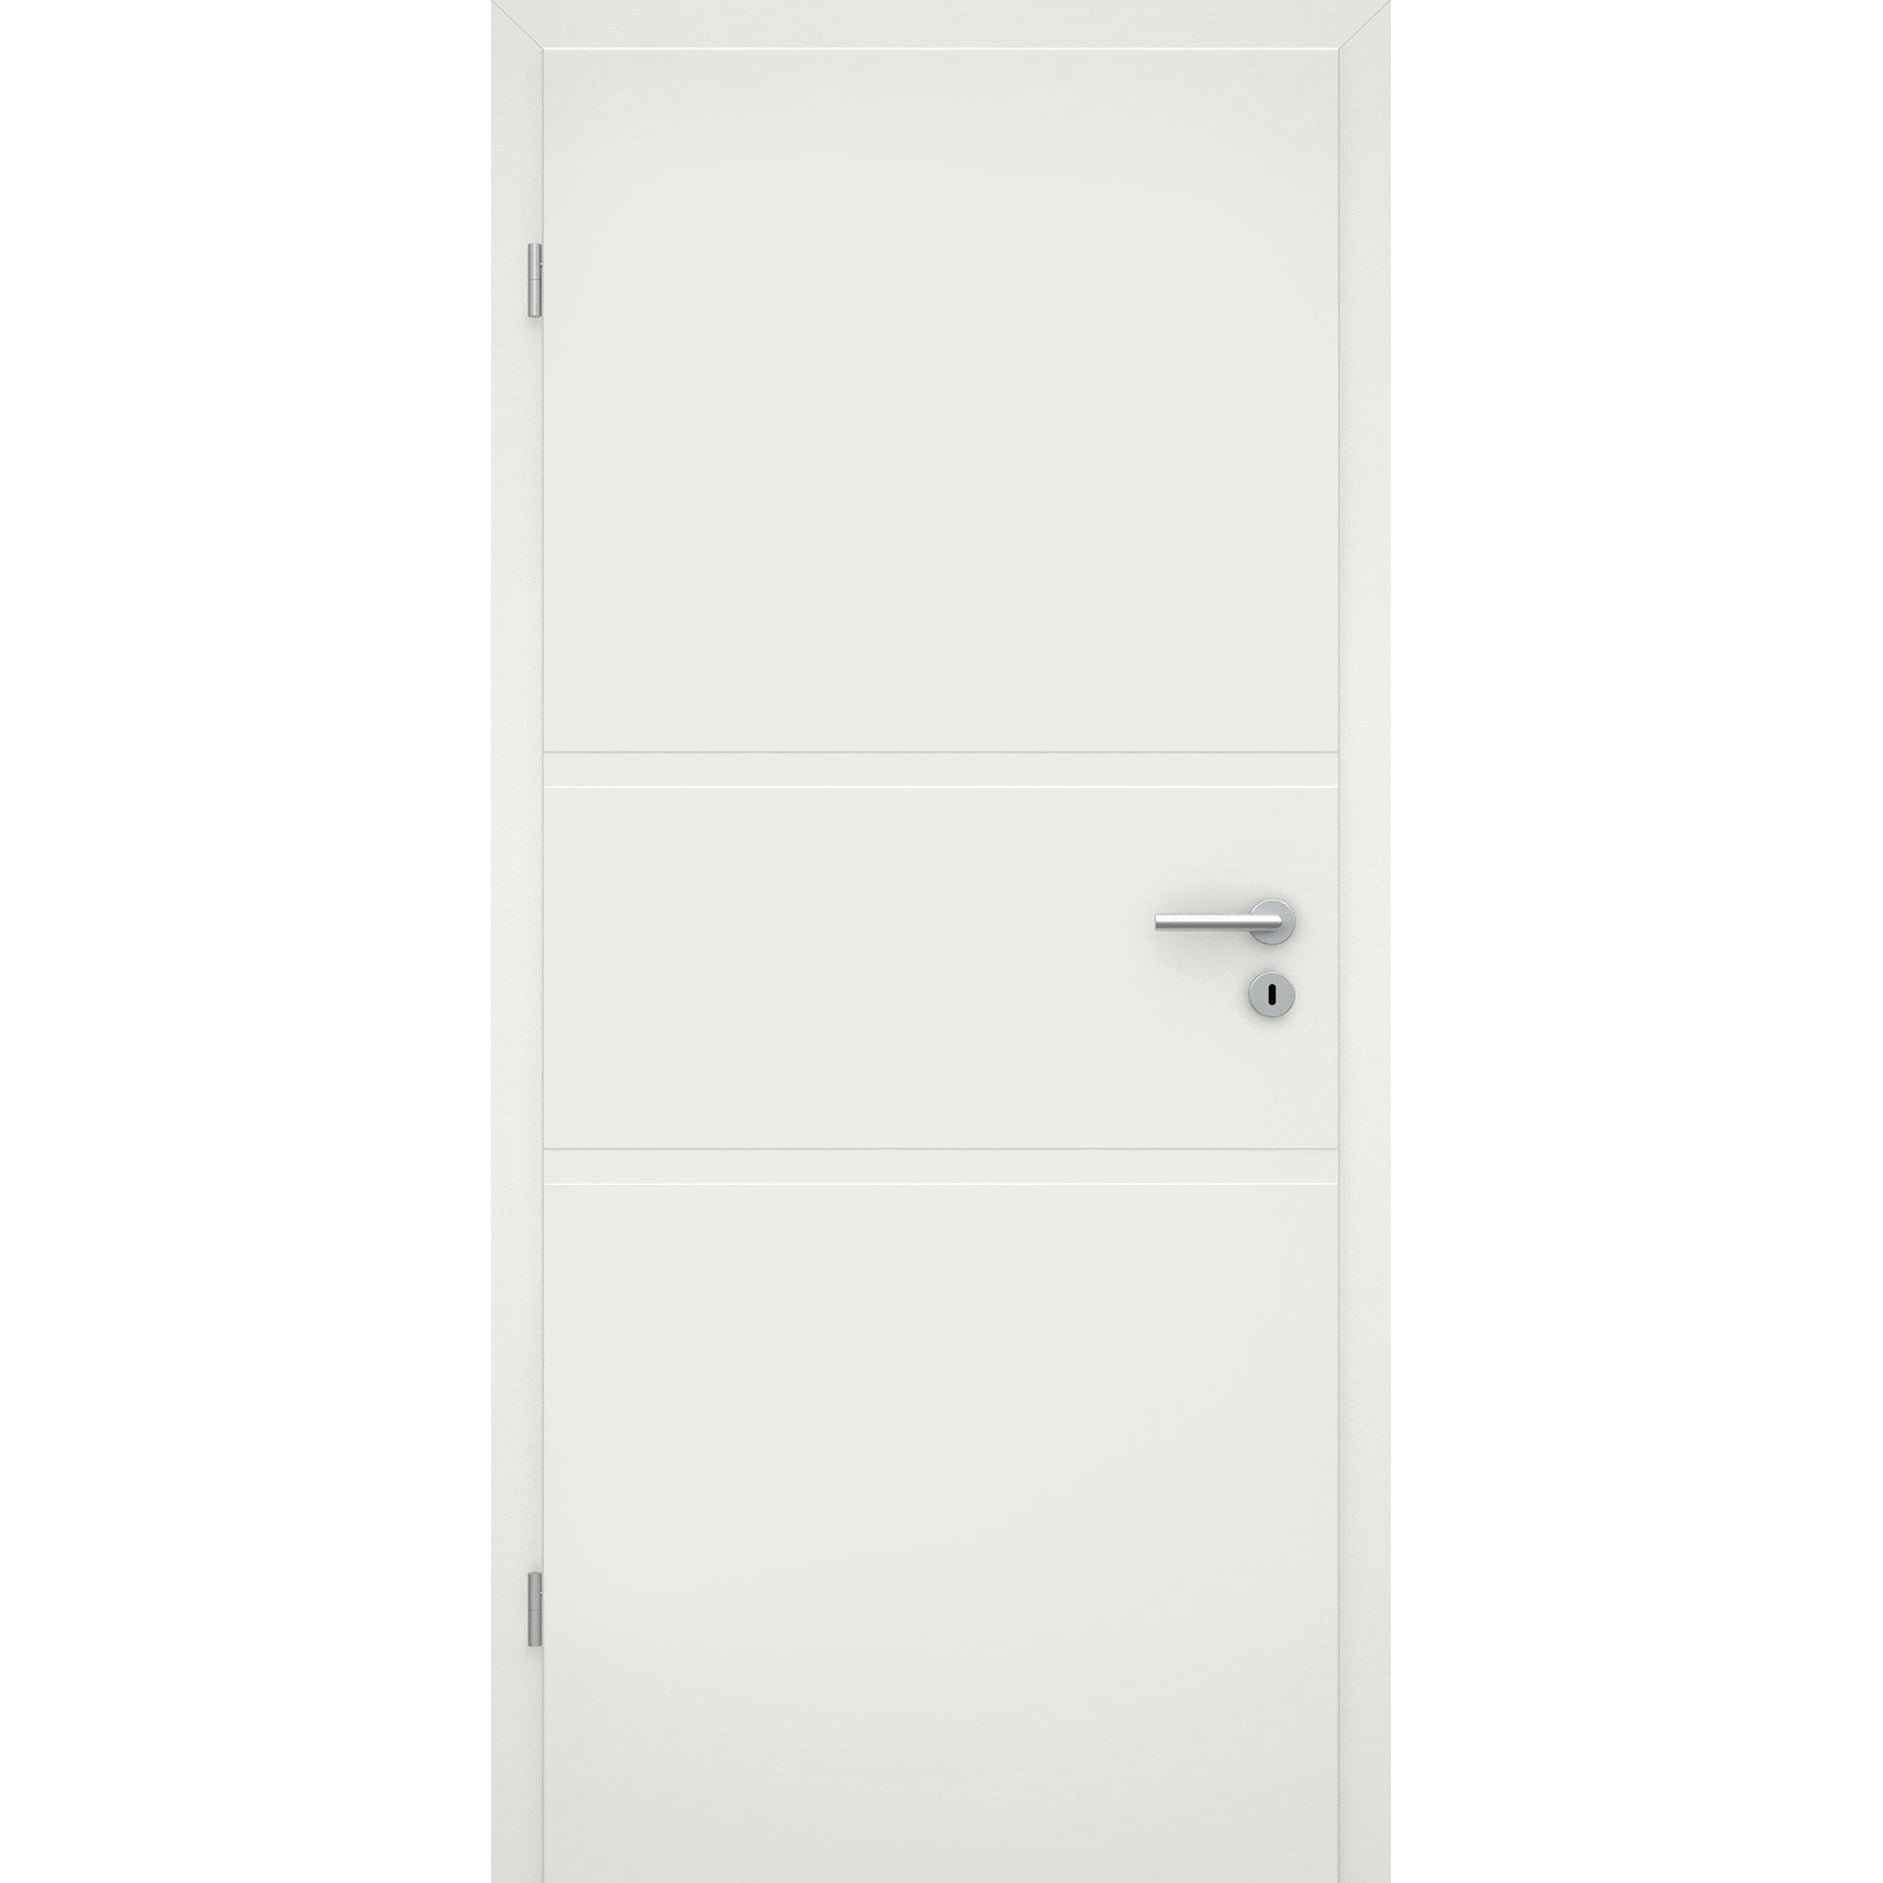 Wohnungseingangstür soft-weiß 2 breite Rillen Eckkante SK1 / KK3 - Modell Designtür QB21